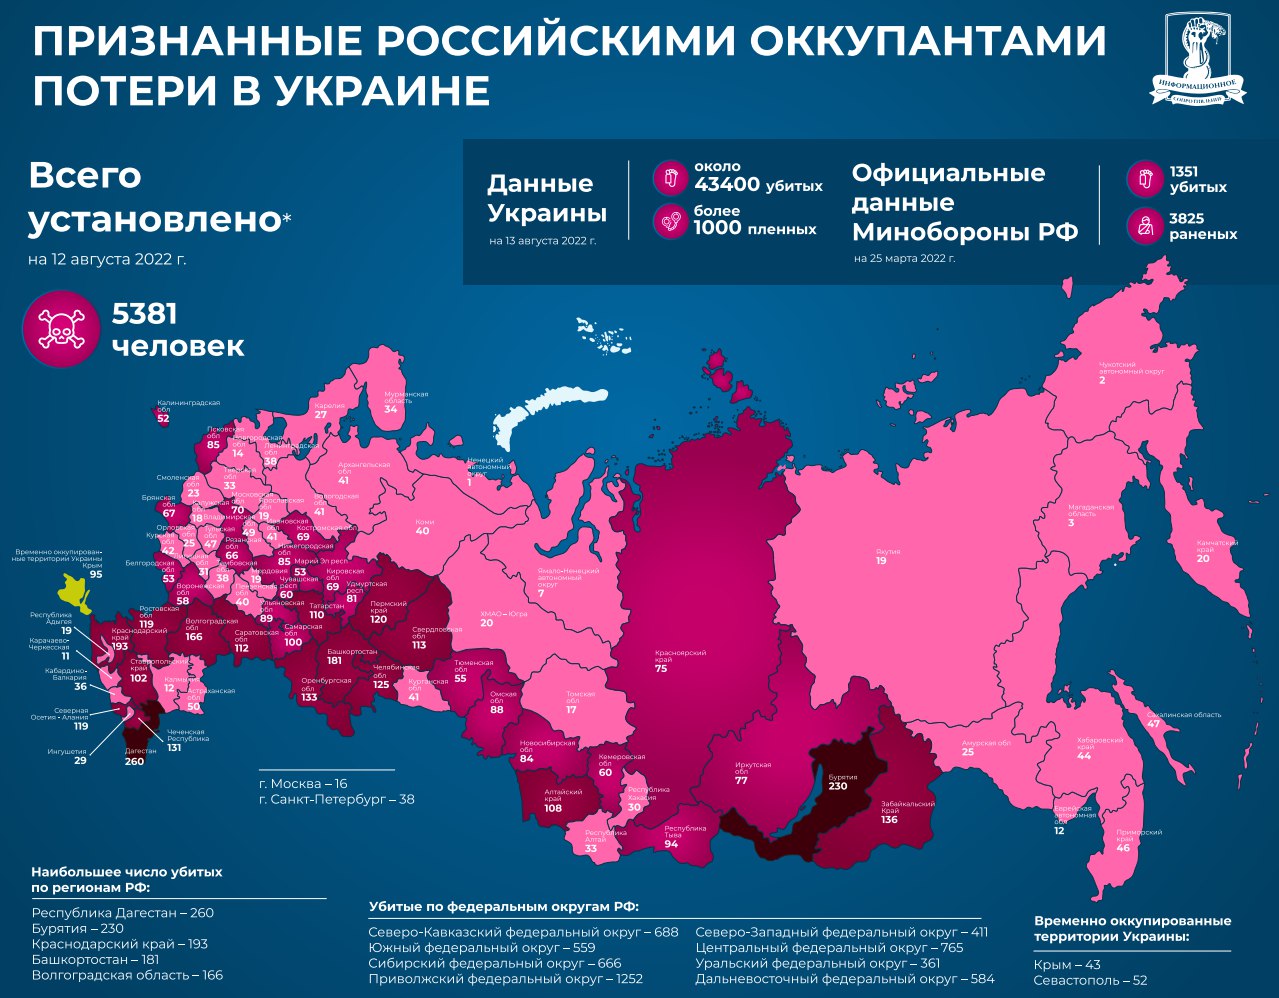 Дагестан лидирует, Москва "в хвосте". Советник Резникова показал признанные Россией потери